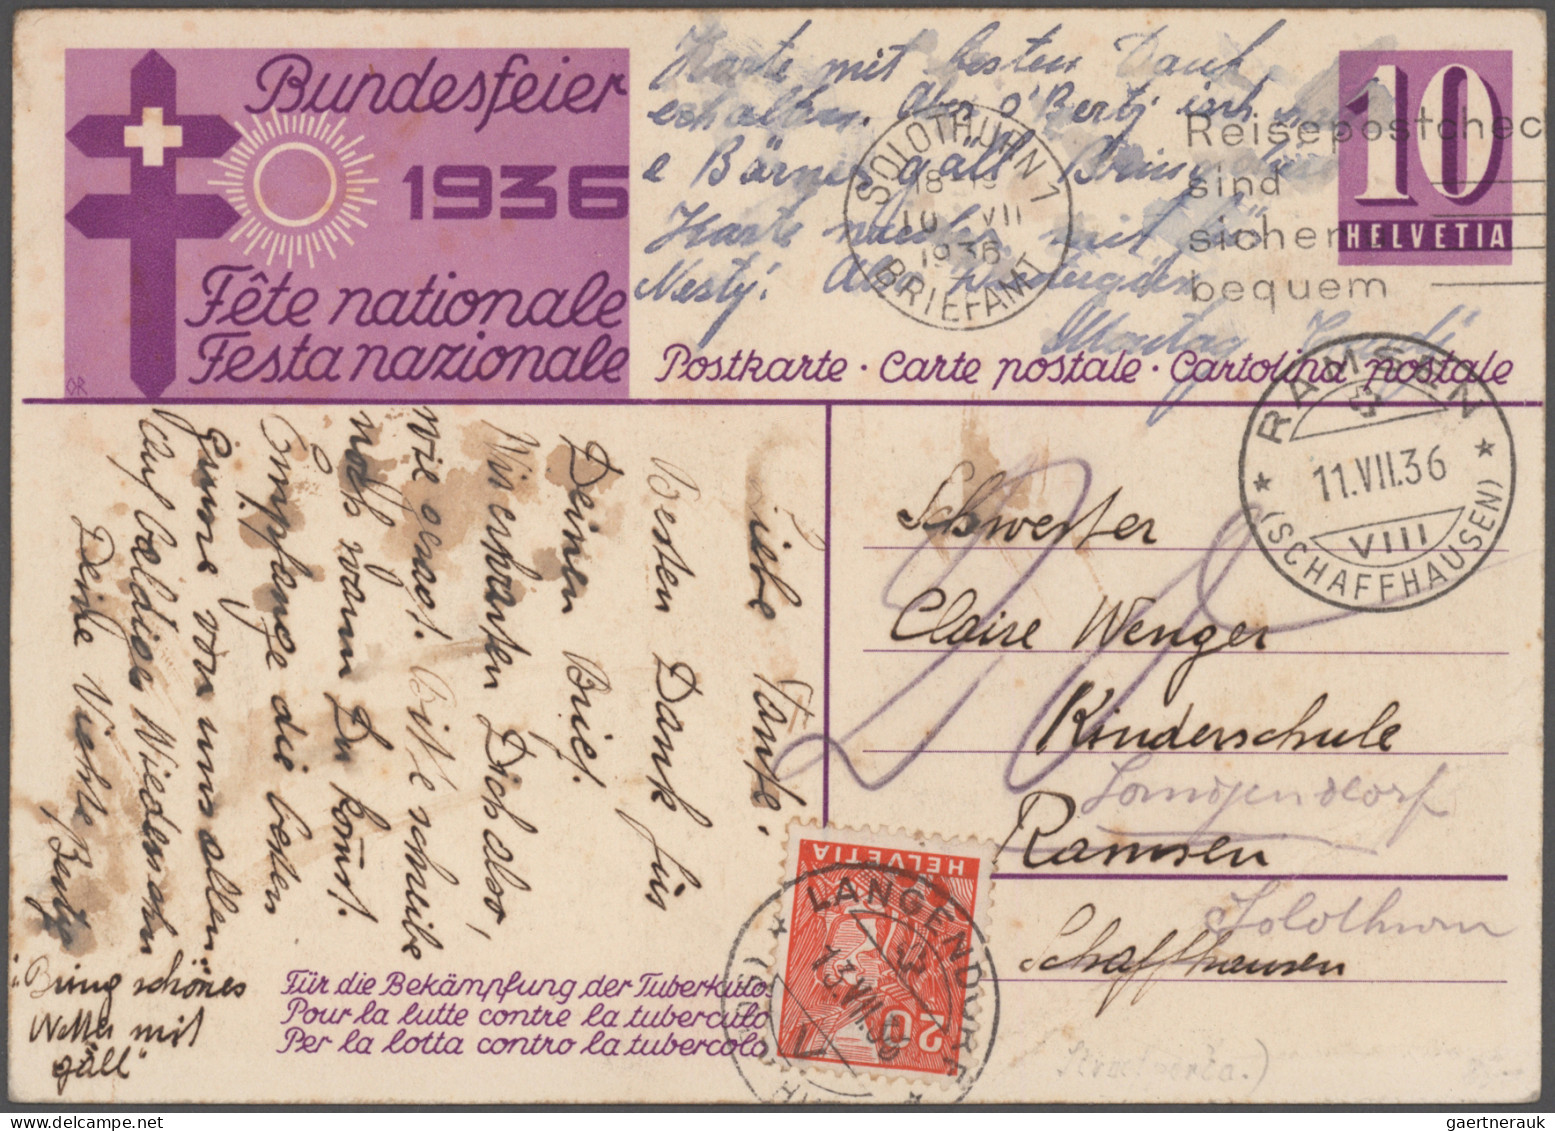 Schweiz - Portomarken: 1936/1990 (ca.), vielseitiger Bestand von ca. 300 aus dem